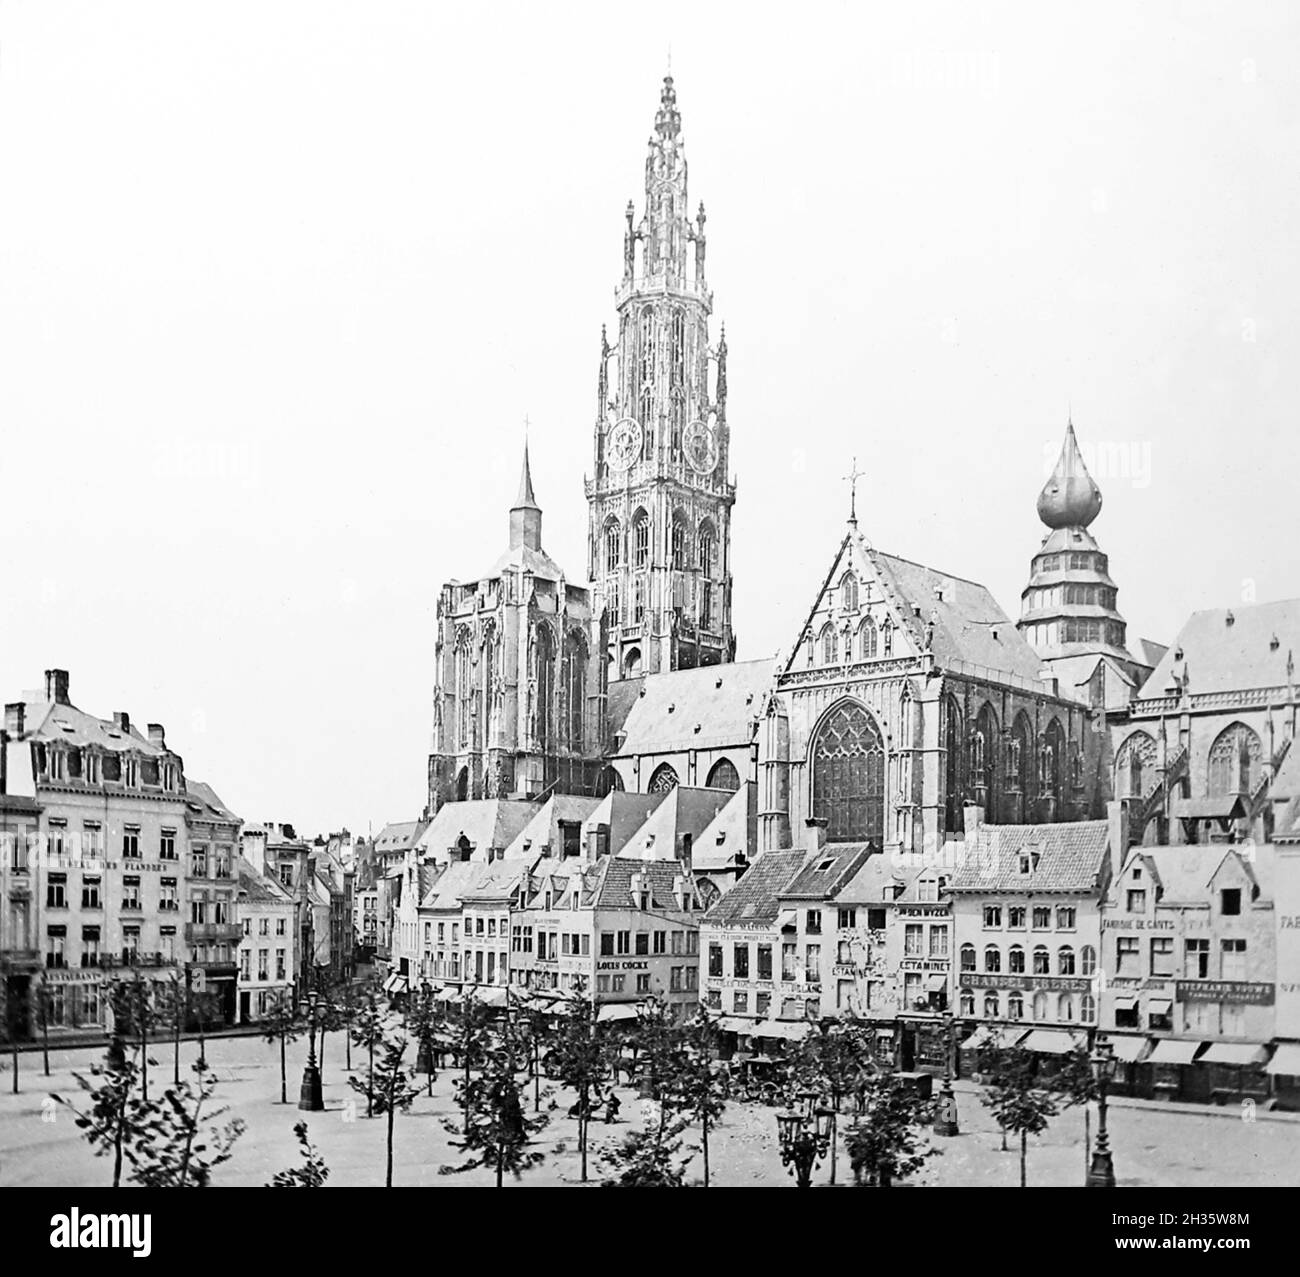 Cathédrale d'Anvers, époque victorienne Banque D'Images